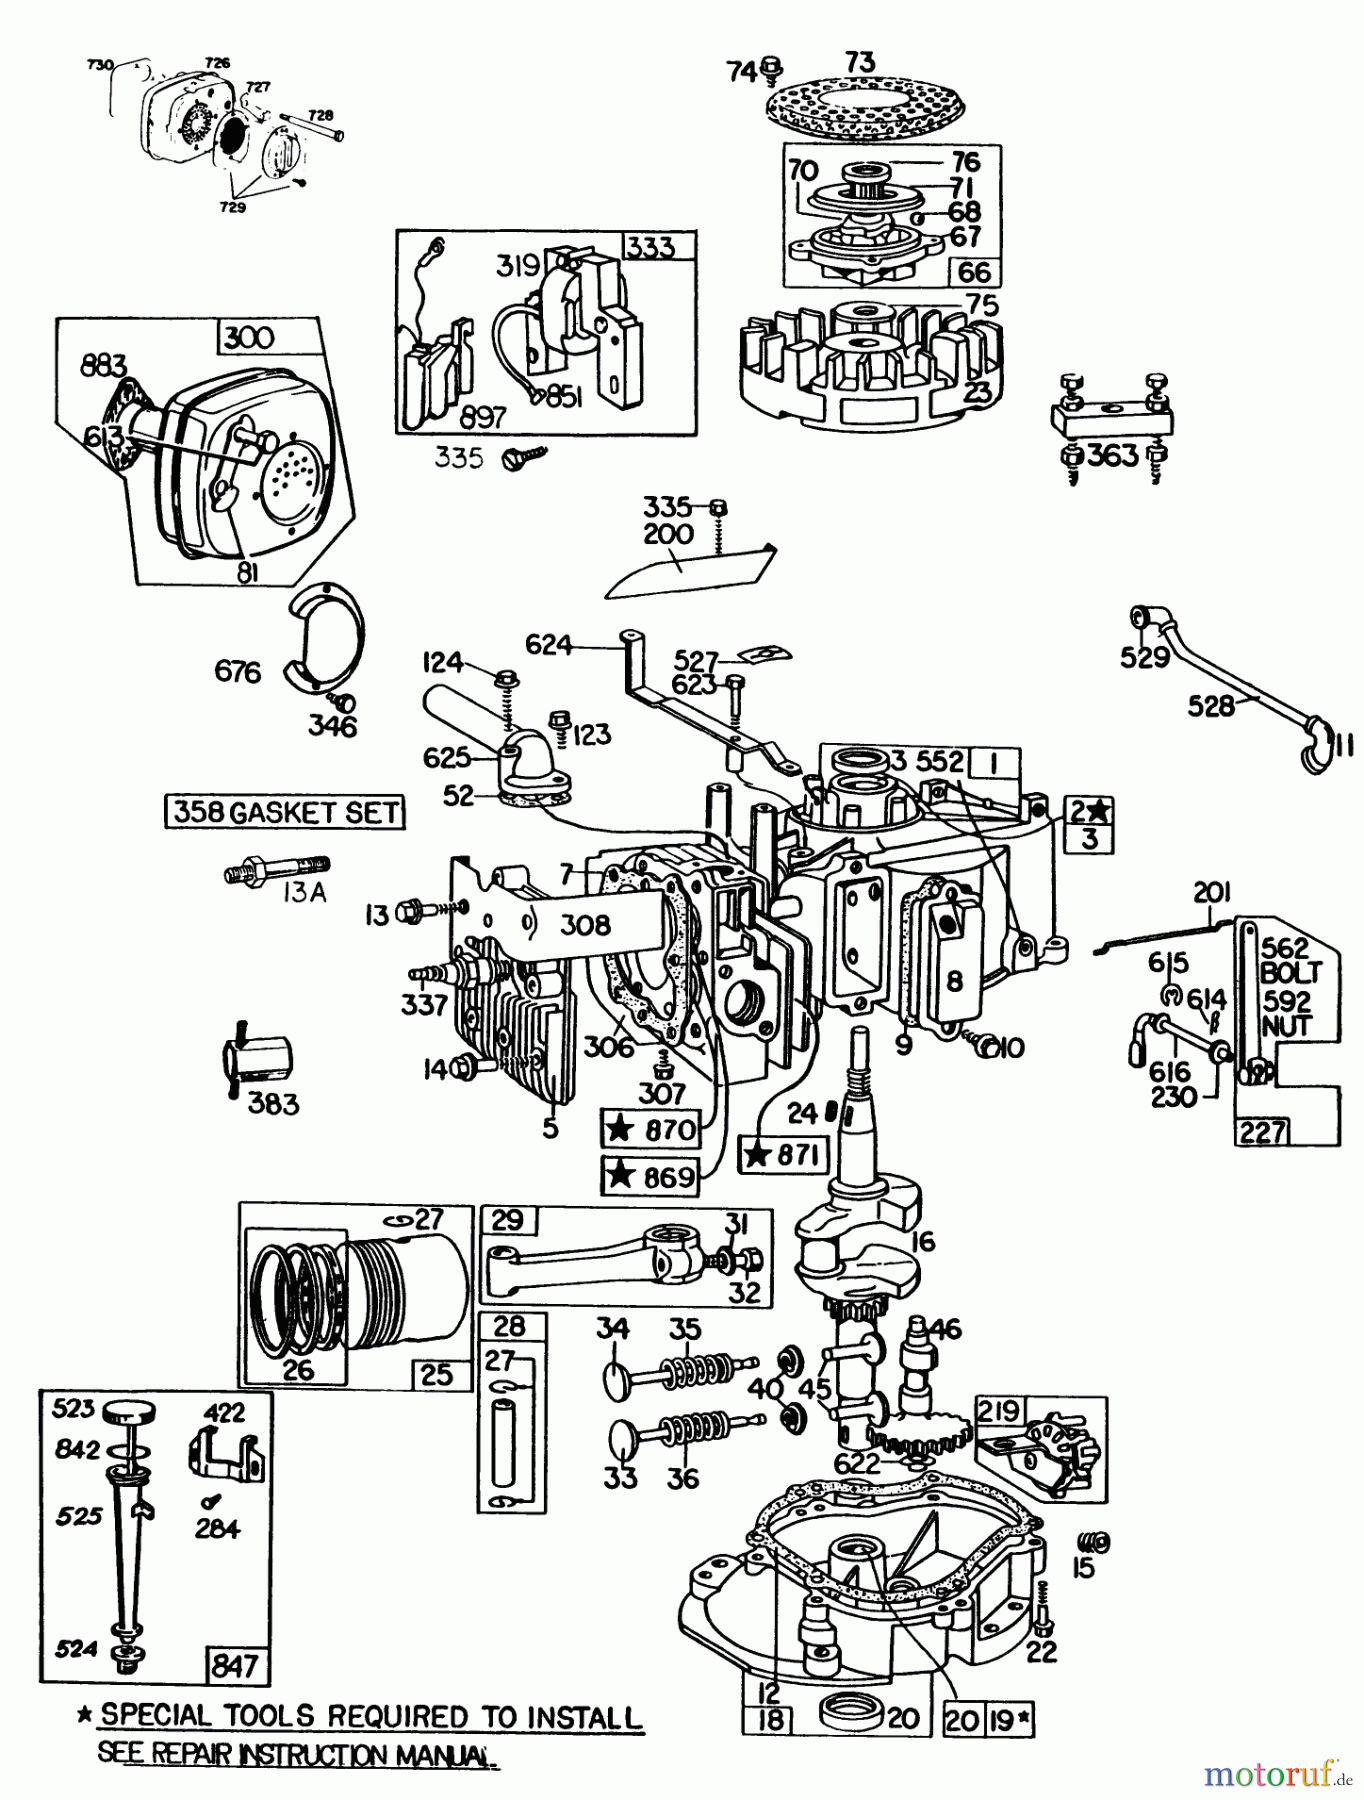  Toro Neu Mowers, Walk-Behind Seite 2 23158 - Toro Lawnmower, 1983 (3000001-3999999) ENGINE BRIGGS & STRATTON MODEL 130902-1162-01 #1